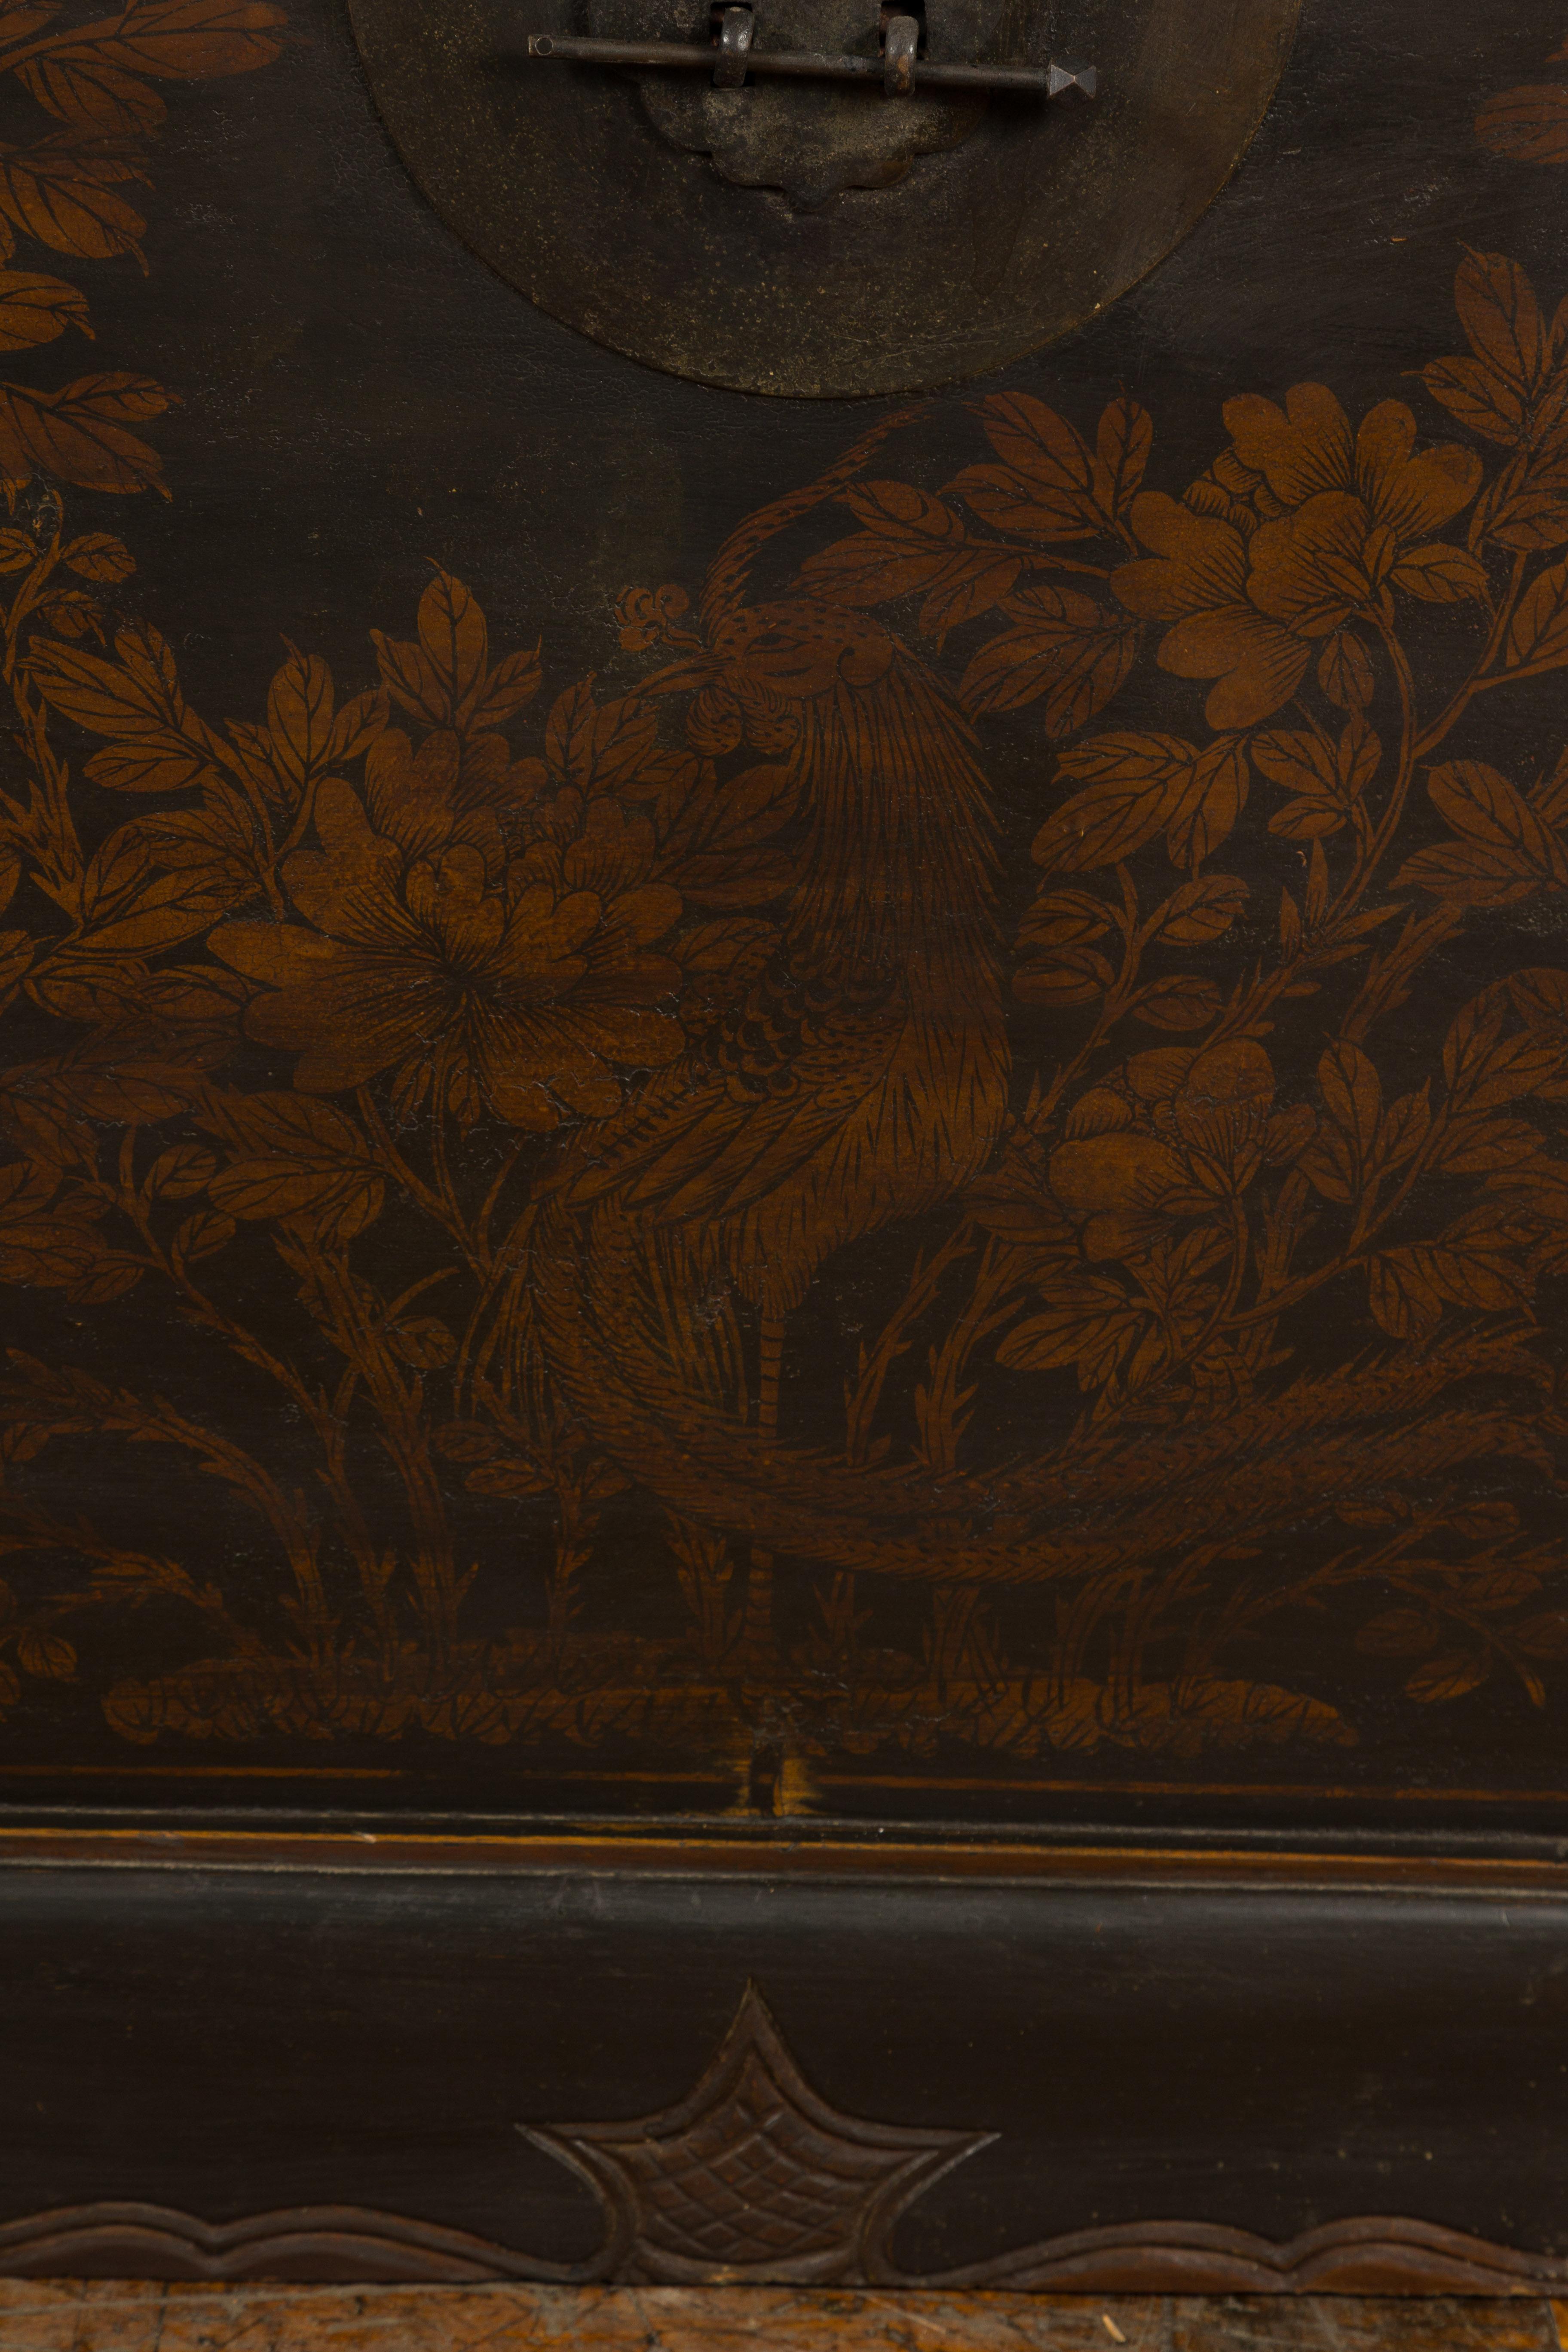 Laiton Coffre à couvertures de la dynastie chinoise Qing avec oiseaux et feuillages peints à la main